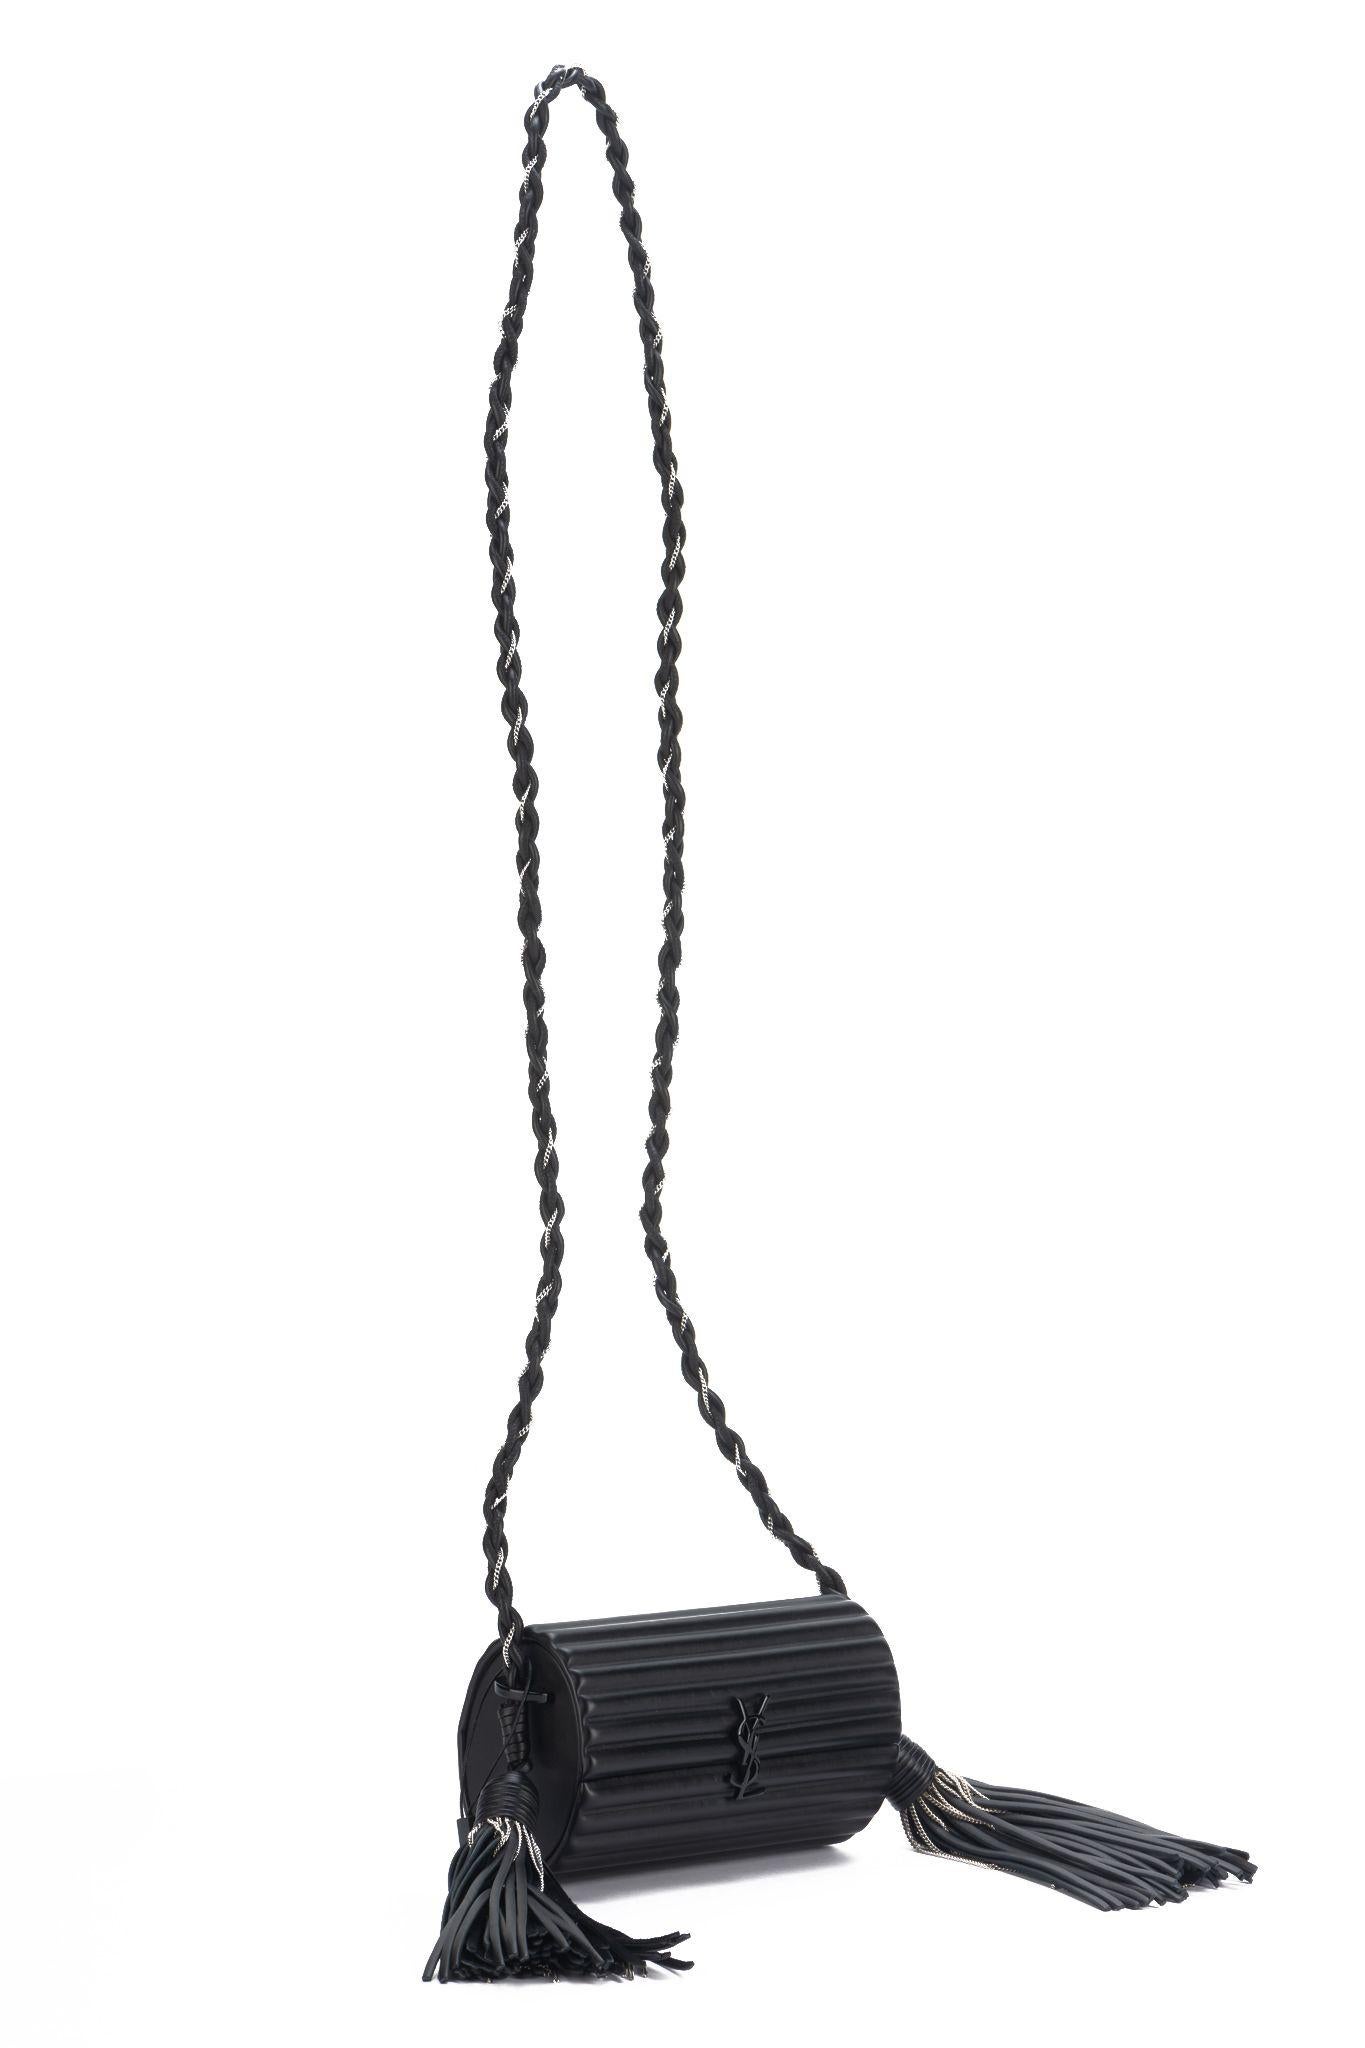 Sac transversal Yves Saint Laurent en cuir noir côtelé, deux glands en cuir et chaîne en métal. Epaule tombante 22.5